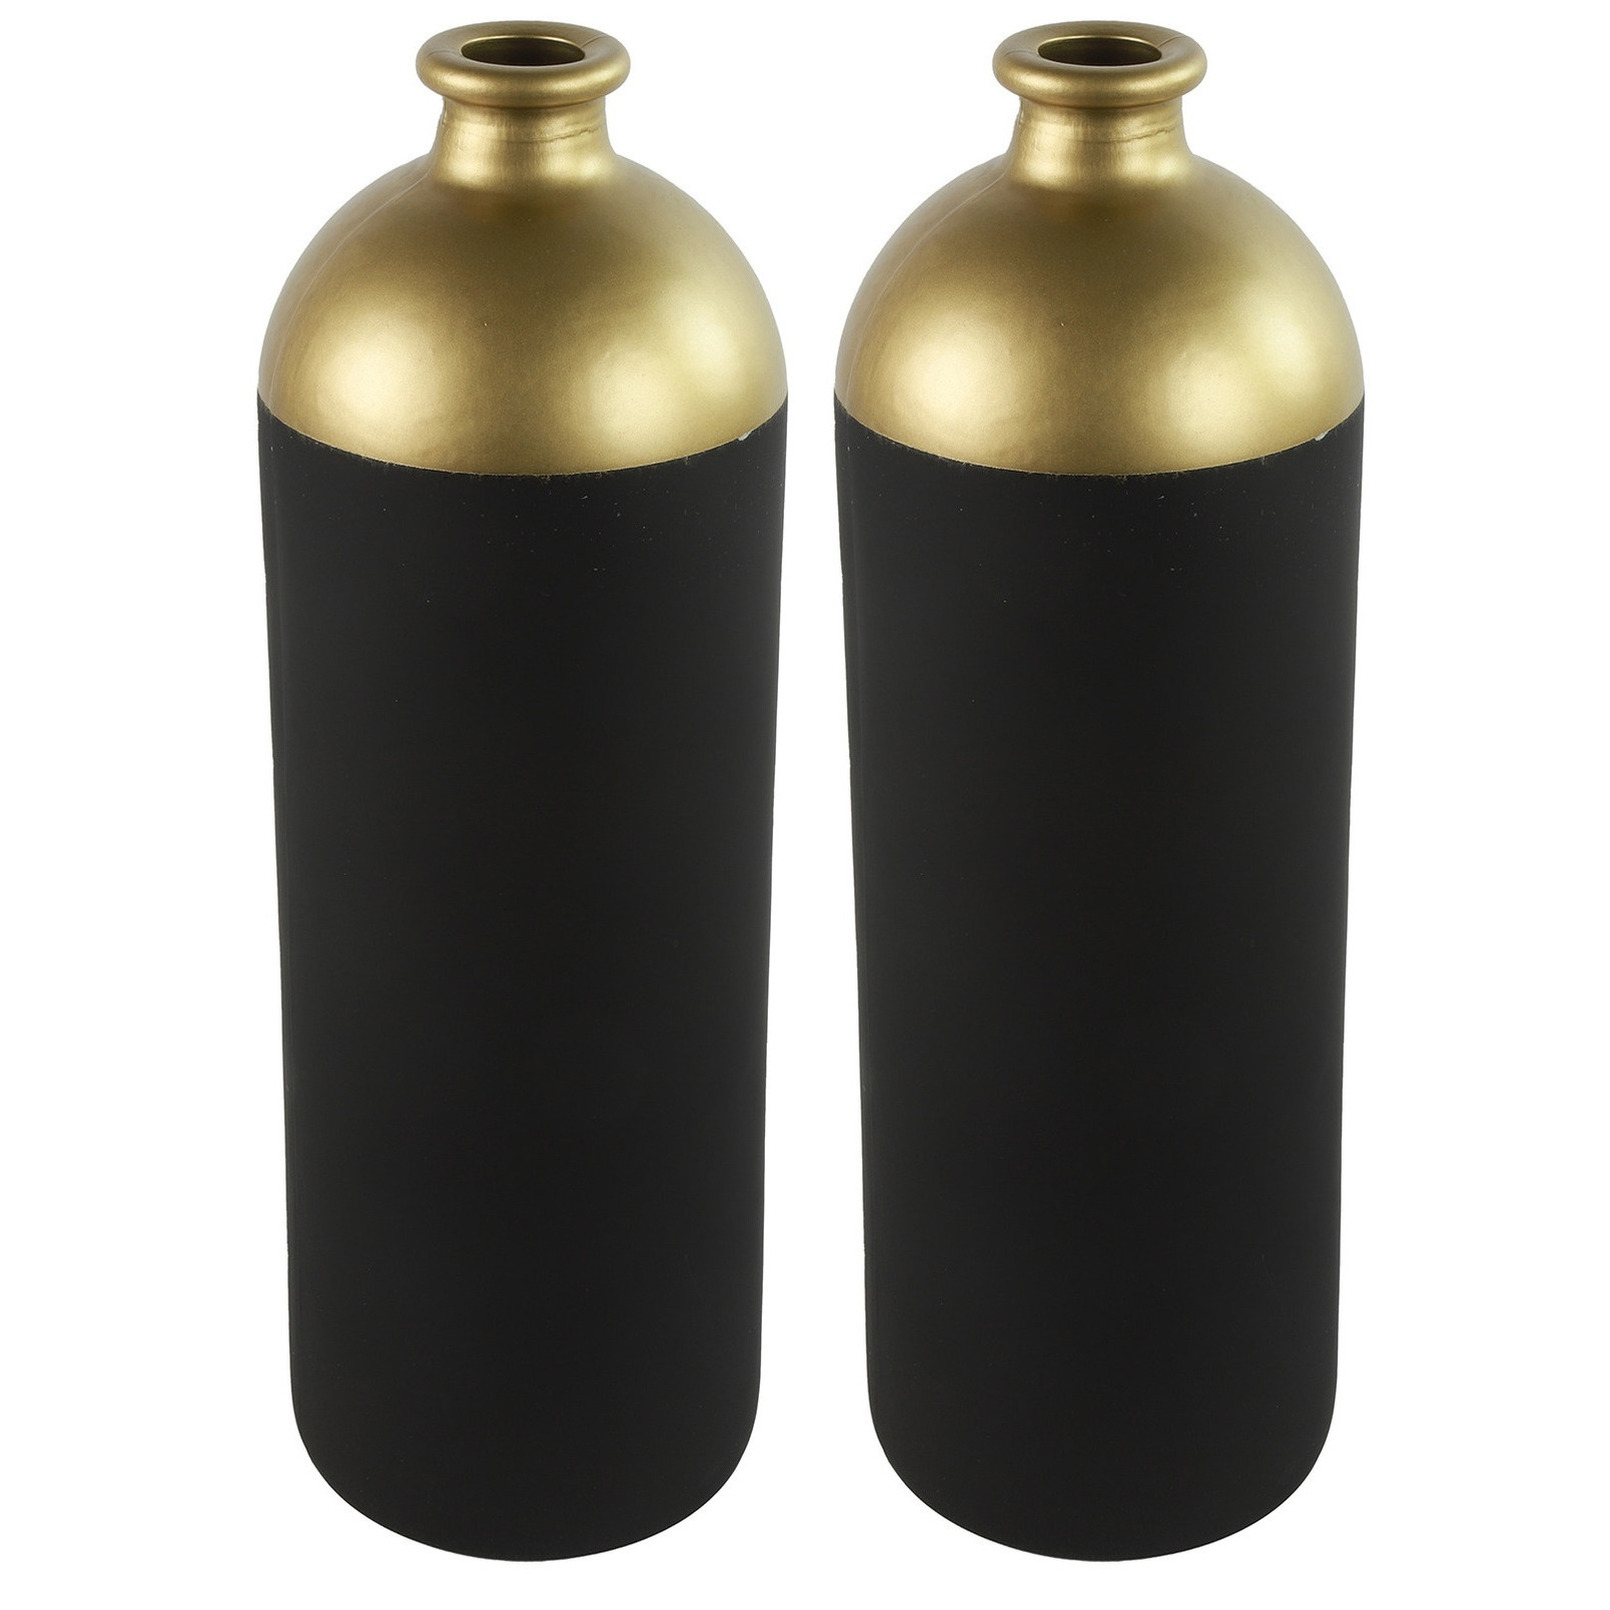 Countryfield Bloemen-deco vaas 2x zwart-goud glas luxe fles vorm D13 x H41 cm